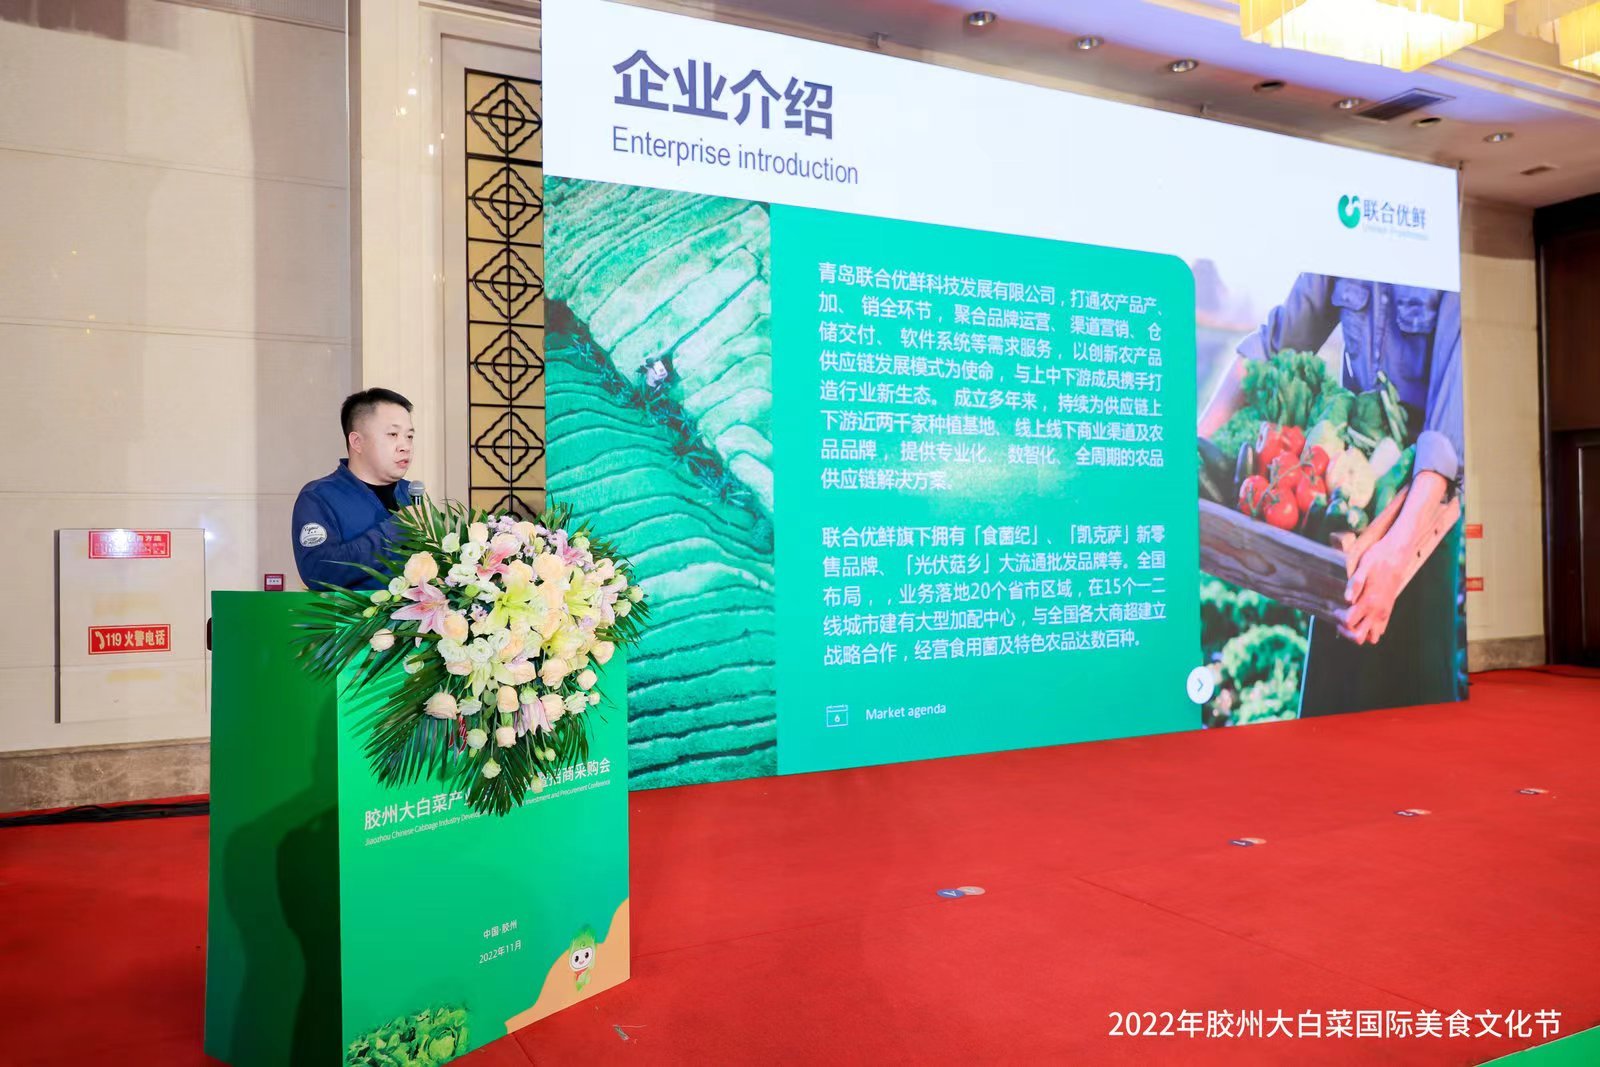 唱响乡村振兴“重头戏”  2022年胶州大白菜国际美食文化节在青岛胶州启动